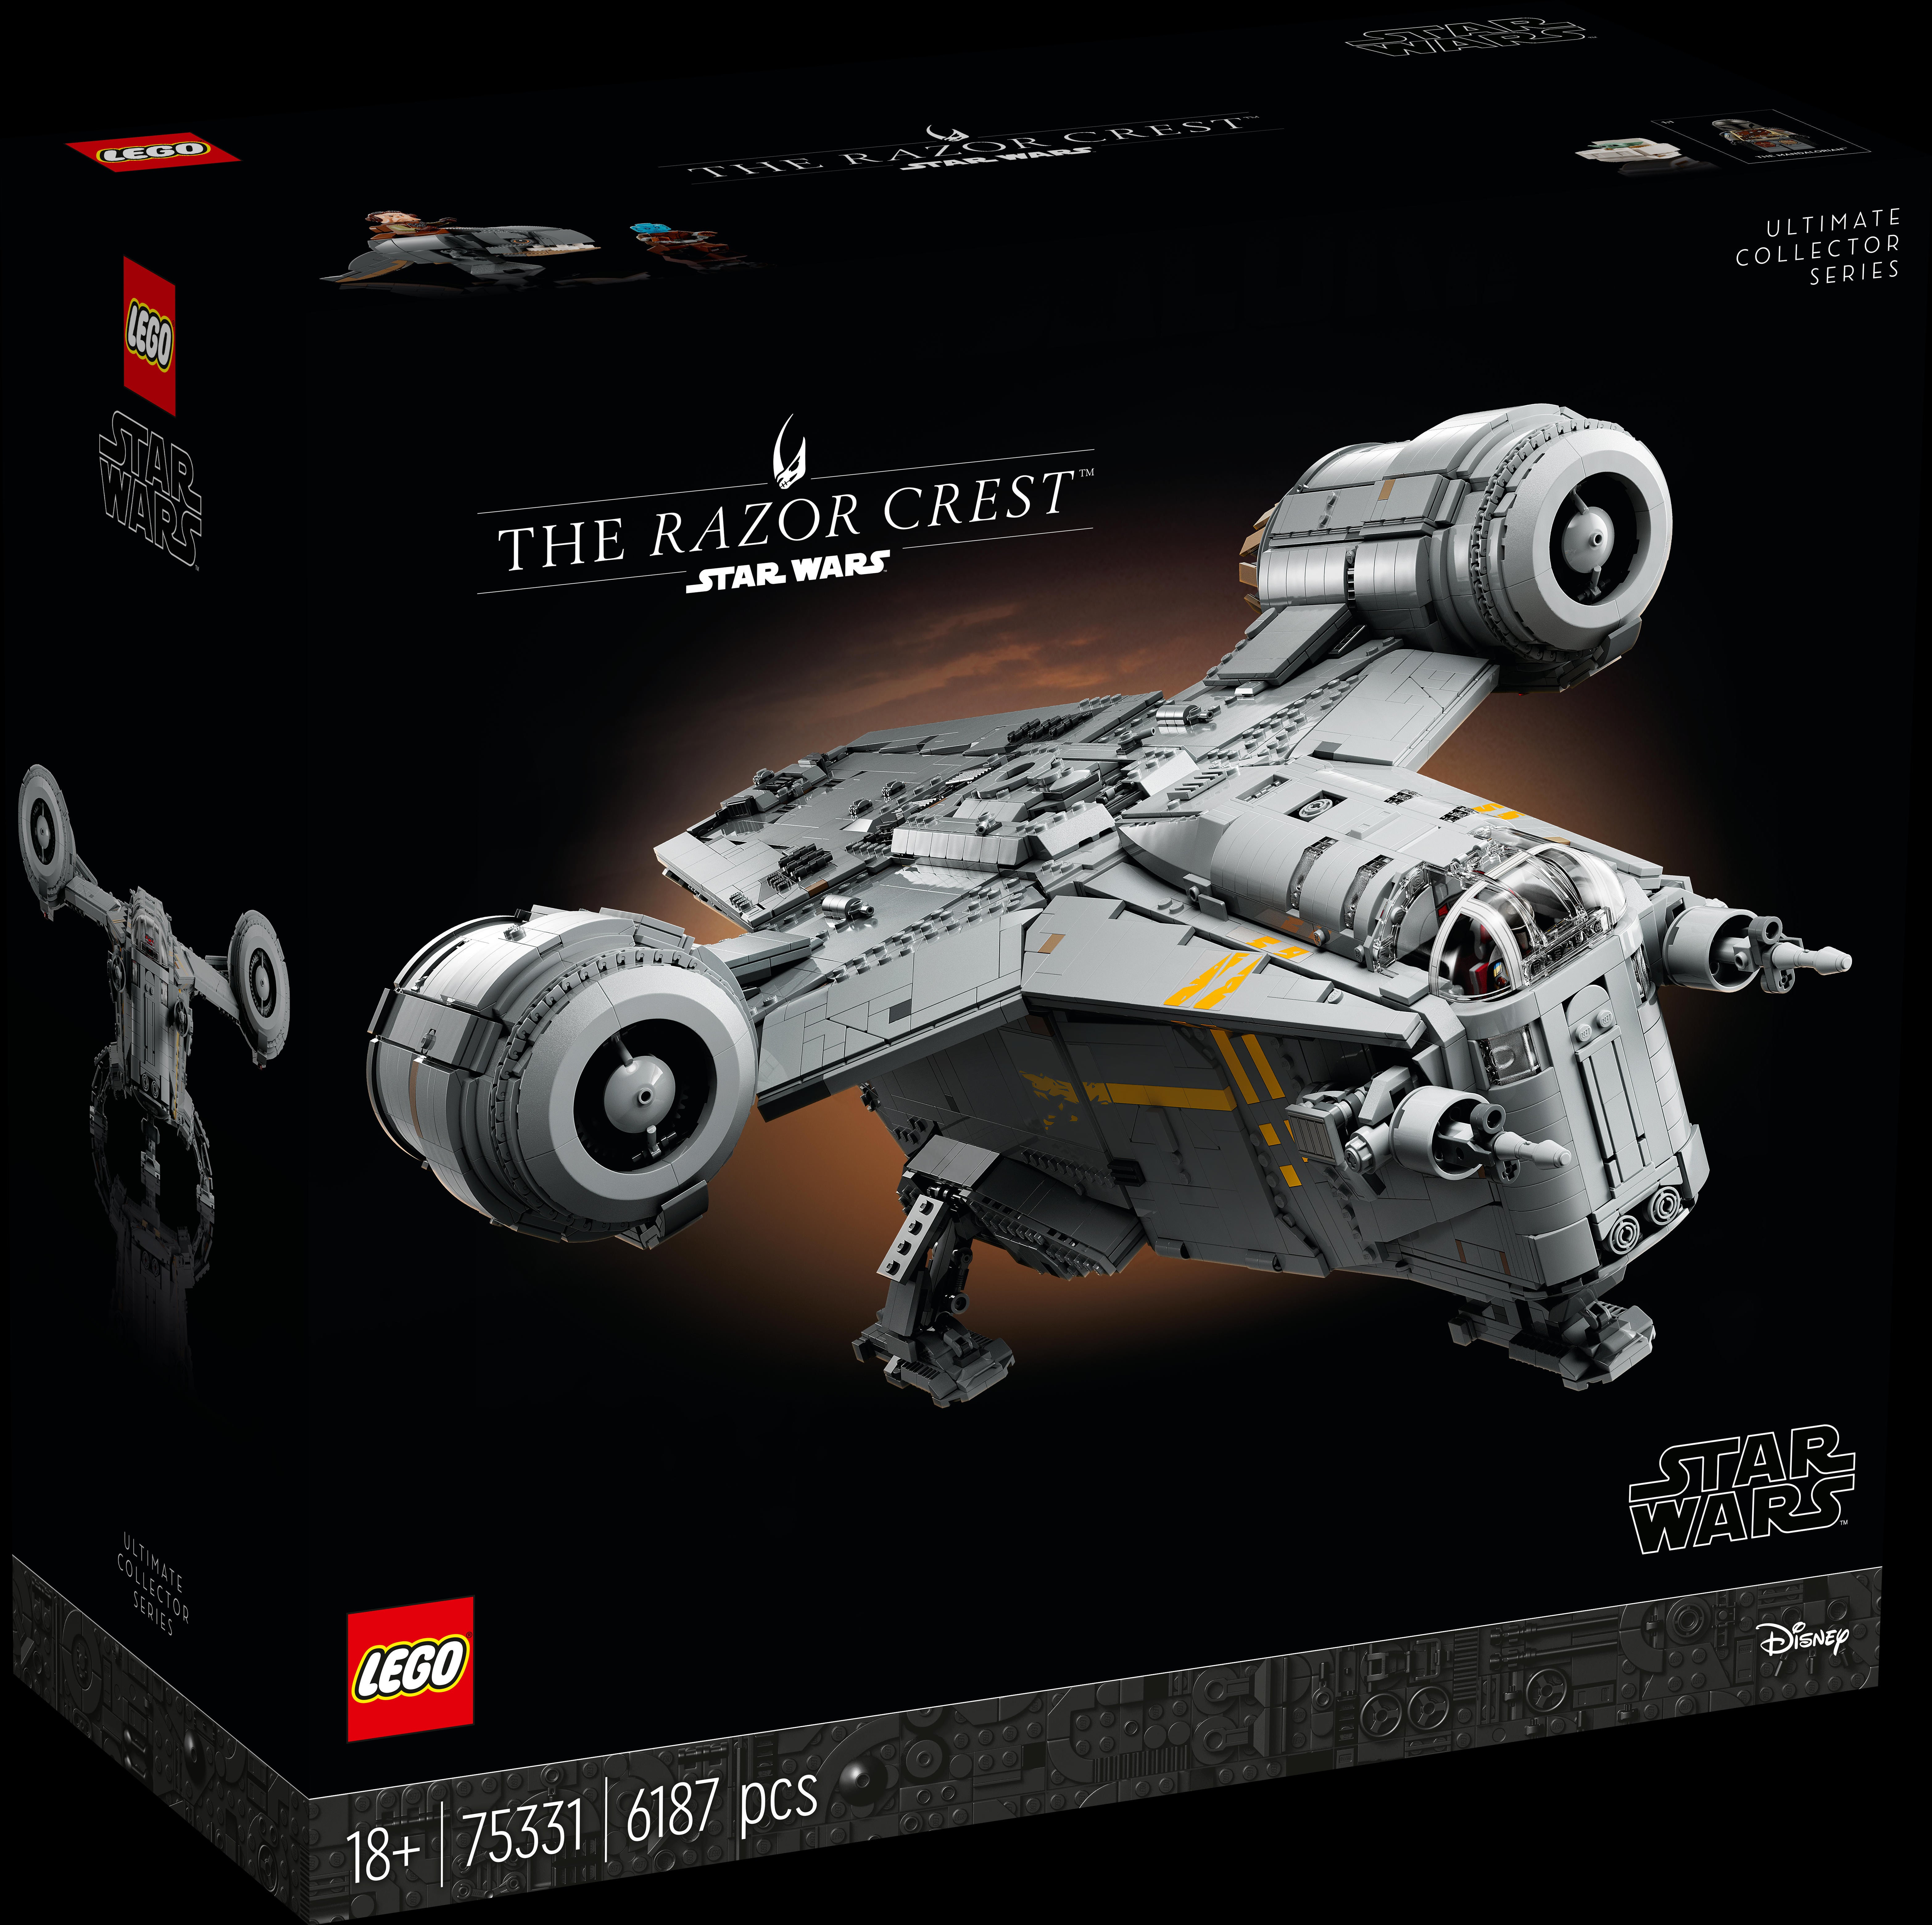 Deal Alert: Save 20% Off the 7,541-Piece LEGO Star Wars Millennium